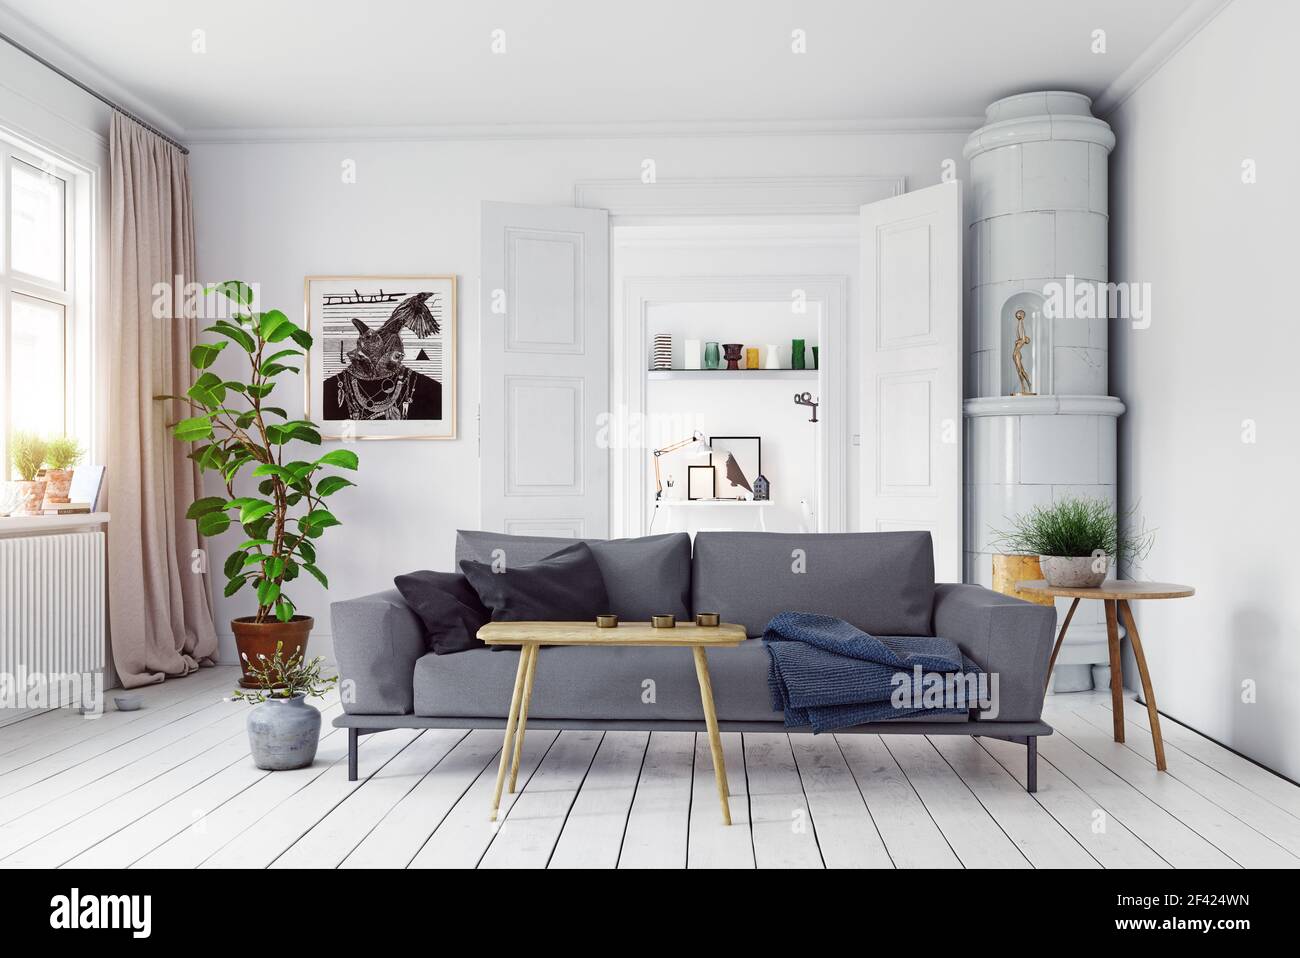 Moderno stile scandinavo living room interior design. 3d illustrazione concept Foto Stock